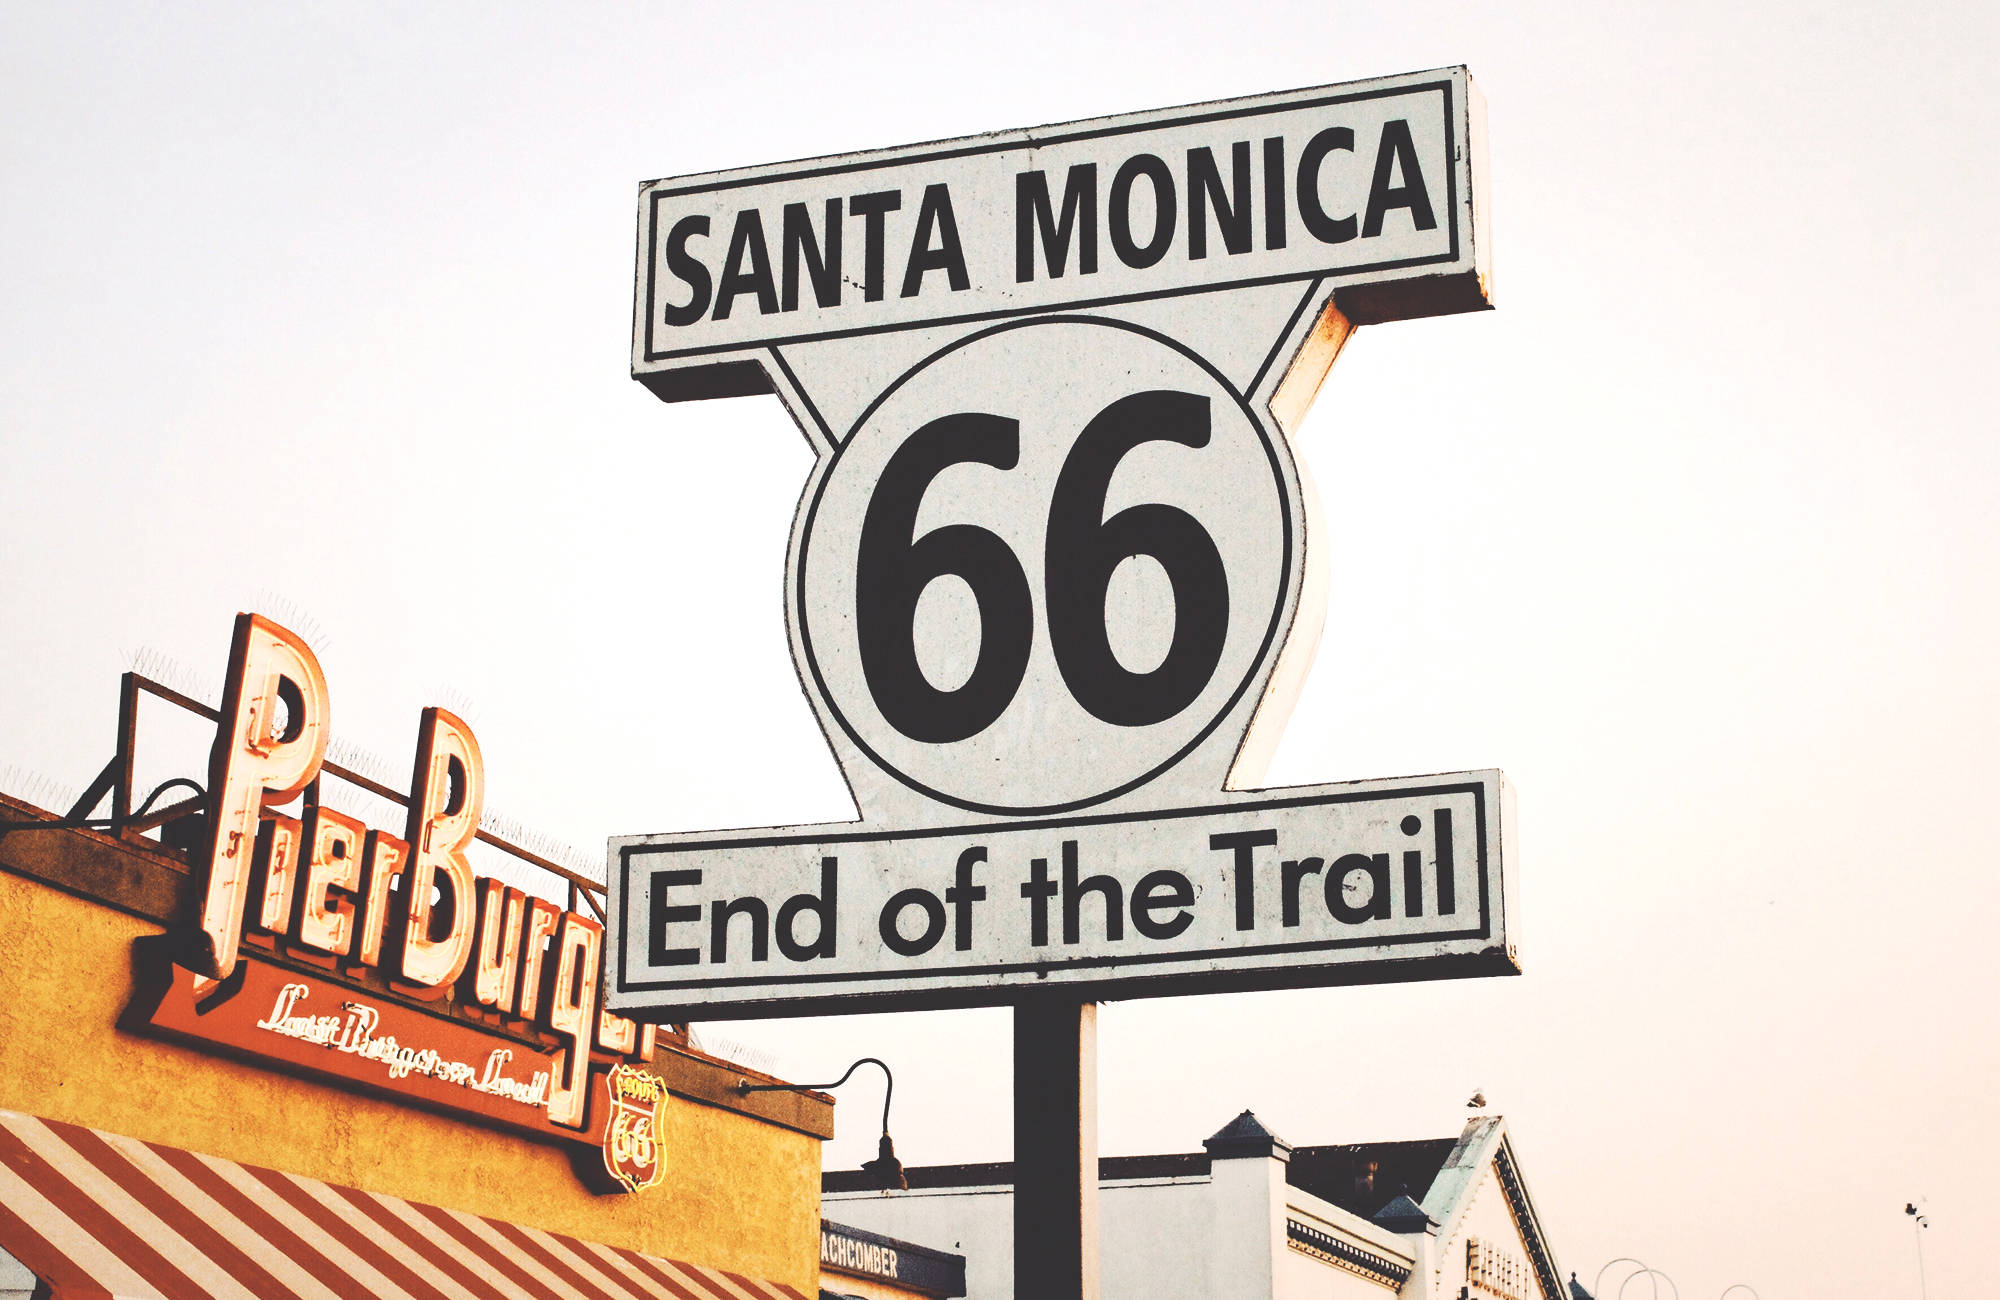 Santa Monica är slutet på route 66